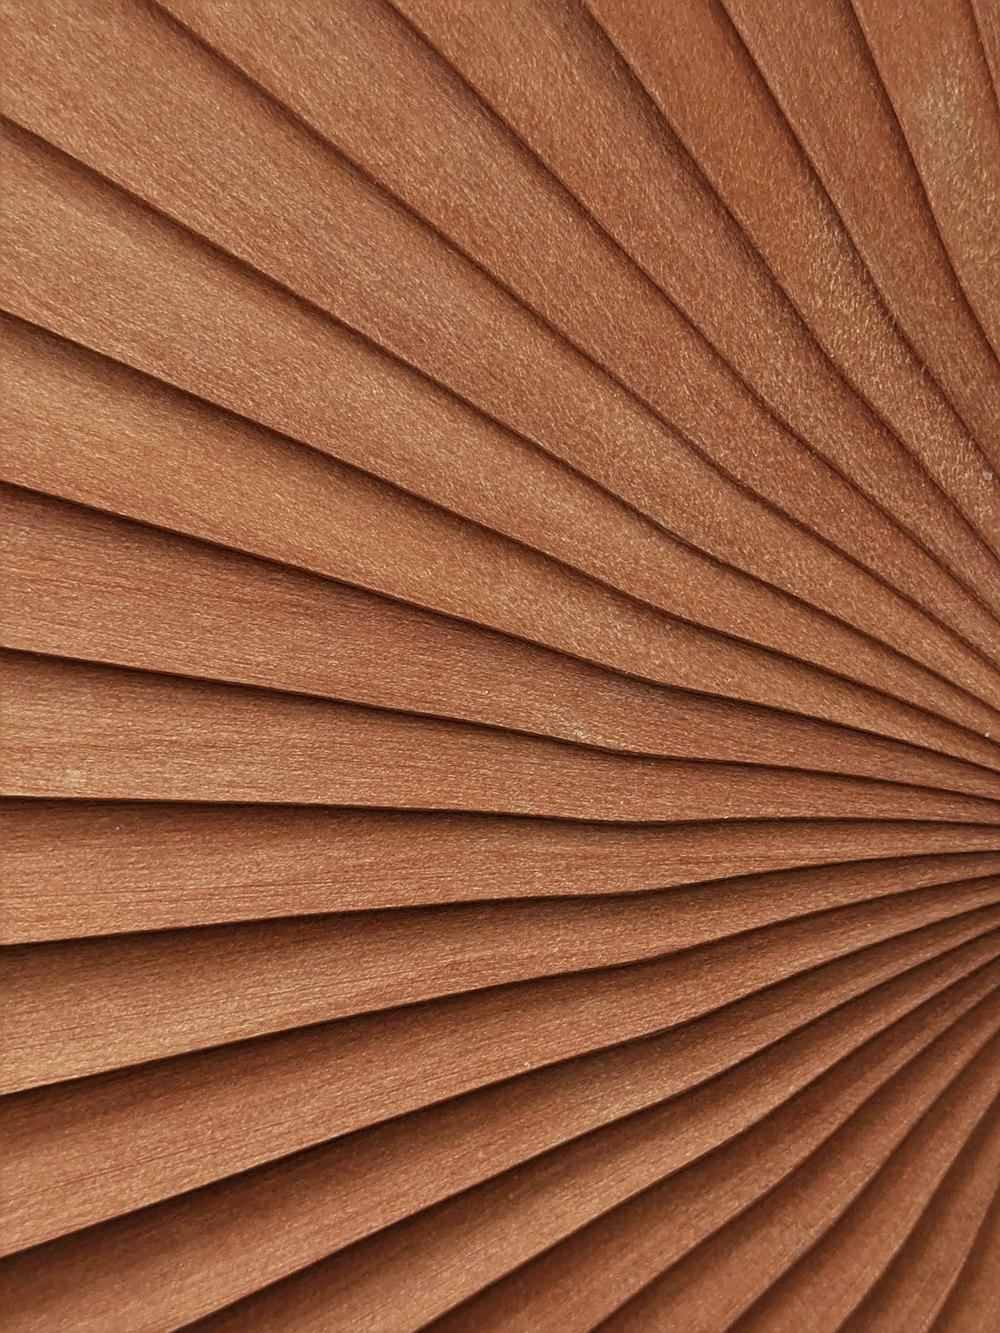 Tablero de madera marrón en fotografía de primer plano